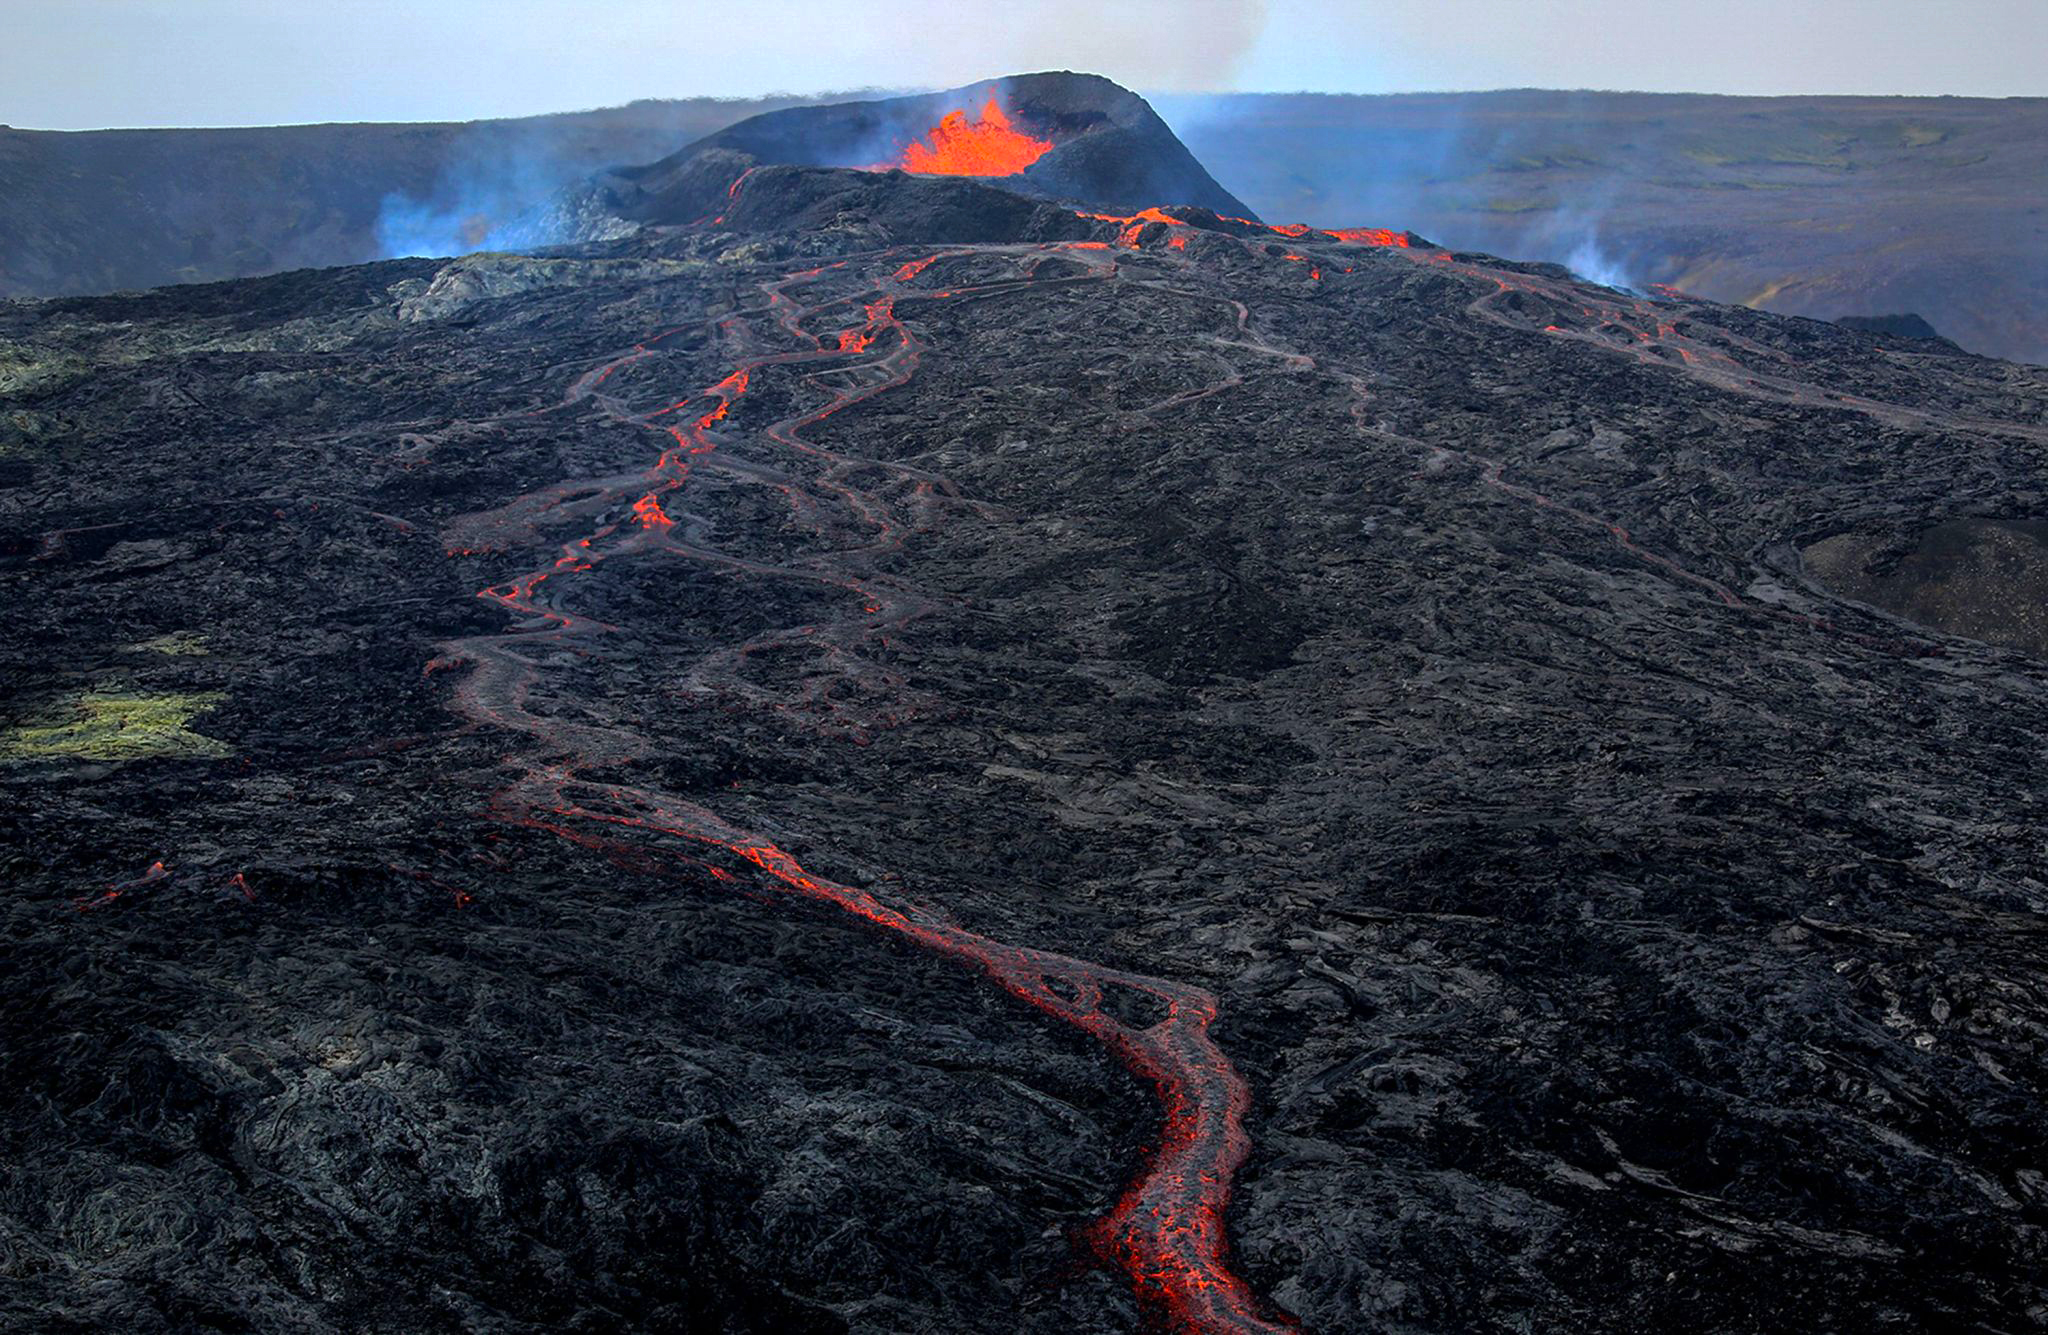 当地时间2021年3月20日,冰岛,法格拉达尔火山喷发的熔岩